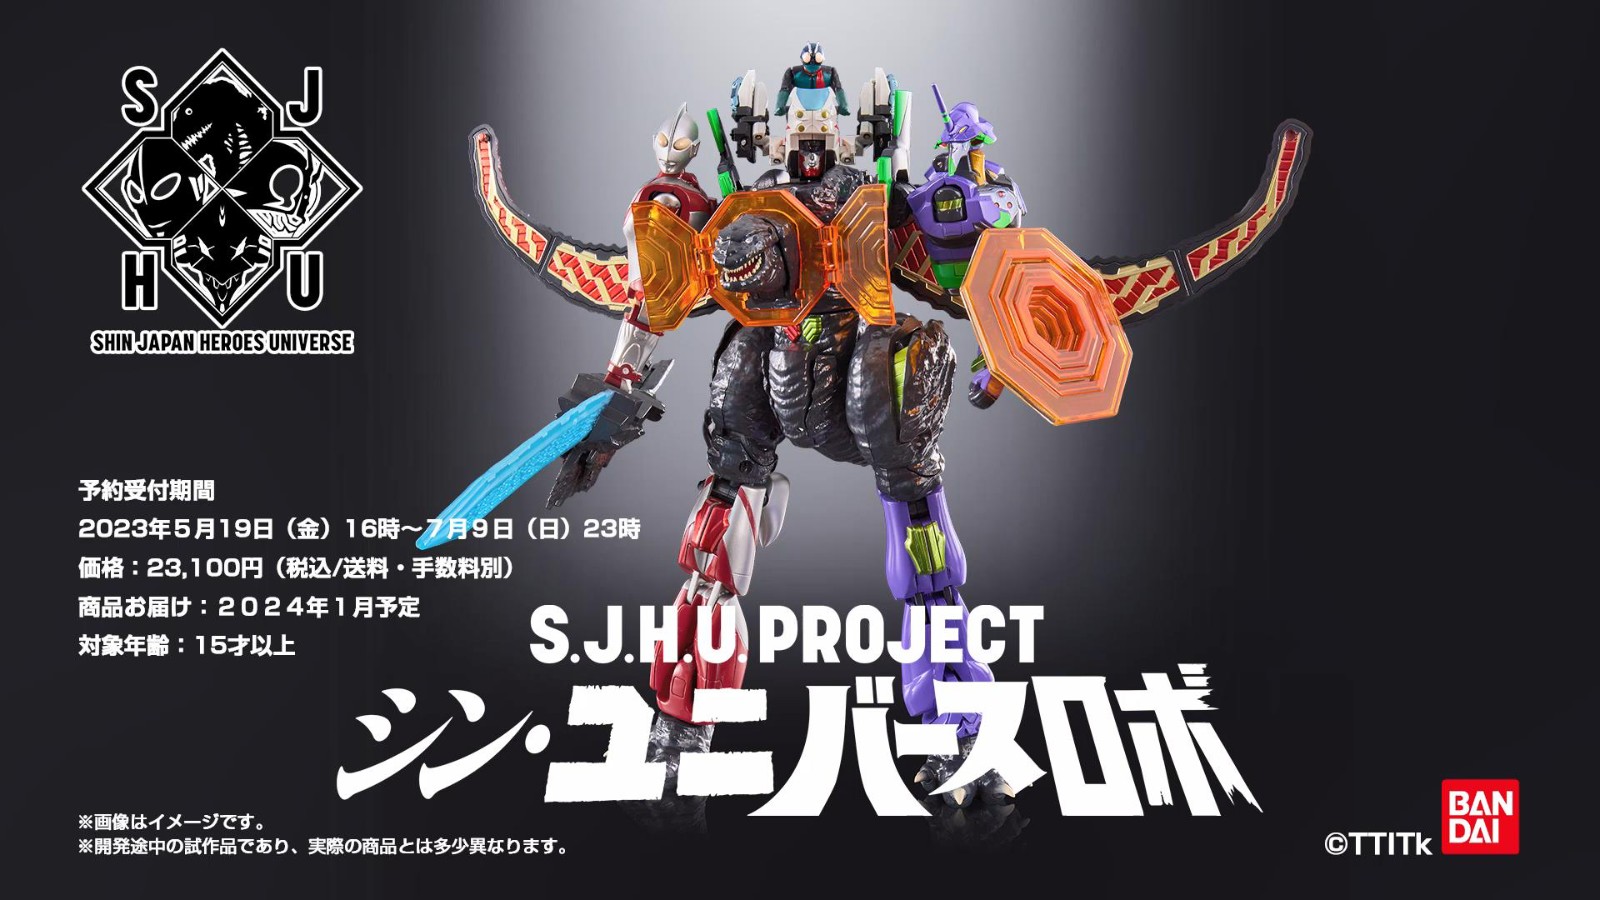 万代推出“新日本英雄宇宙”系列玩具 痞子宇宙奇迹合体